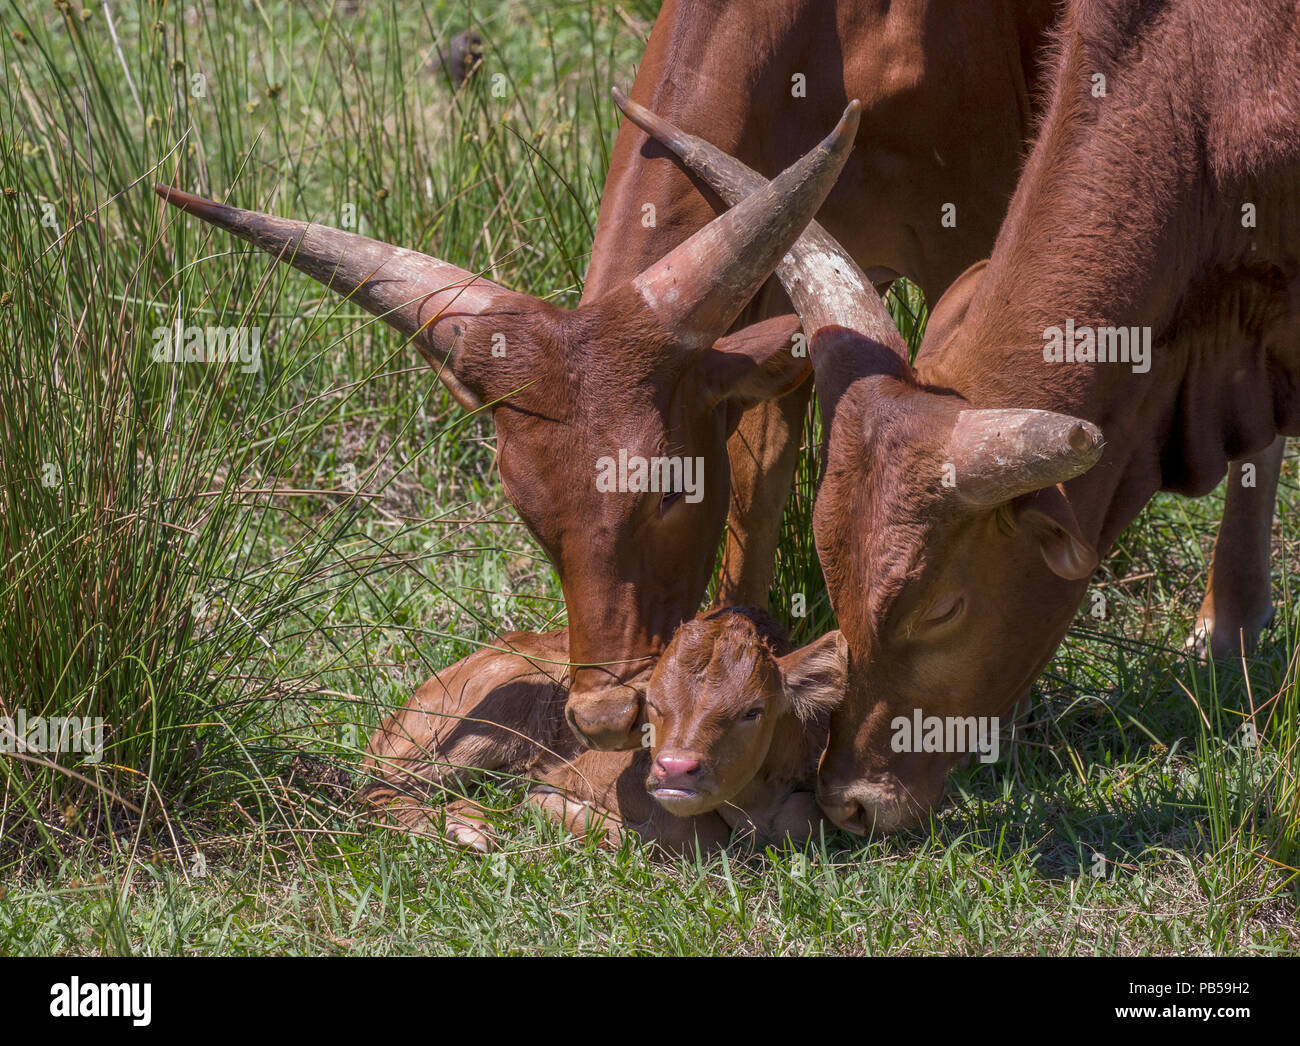 Deux bovins Watusi montrer de l'affection pour le jeune veau Banque D'Images